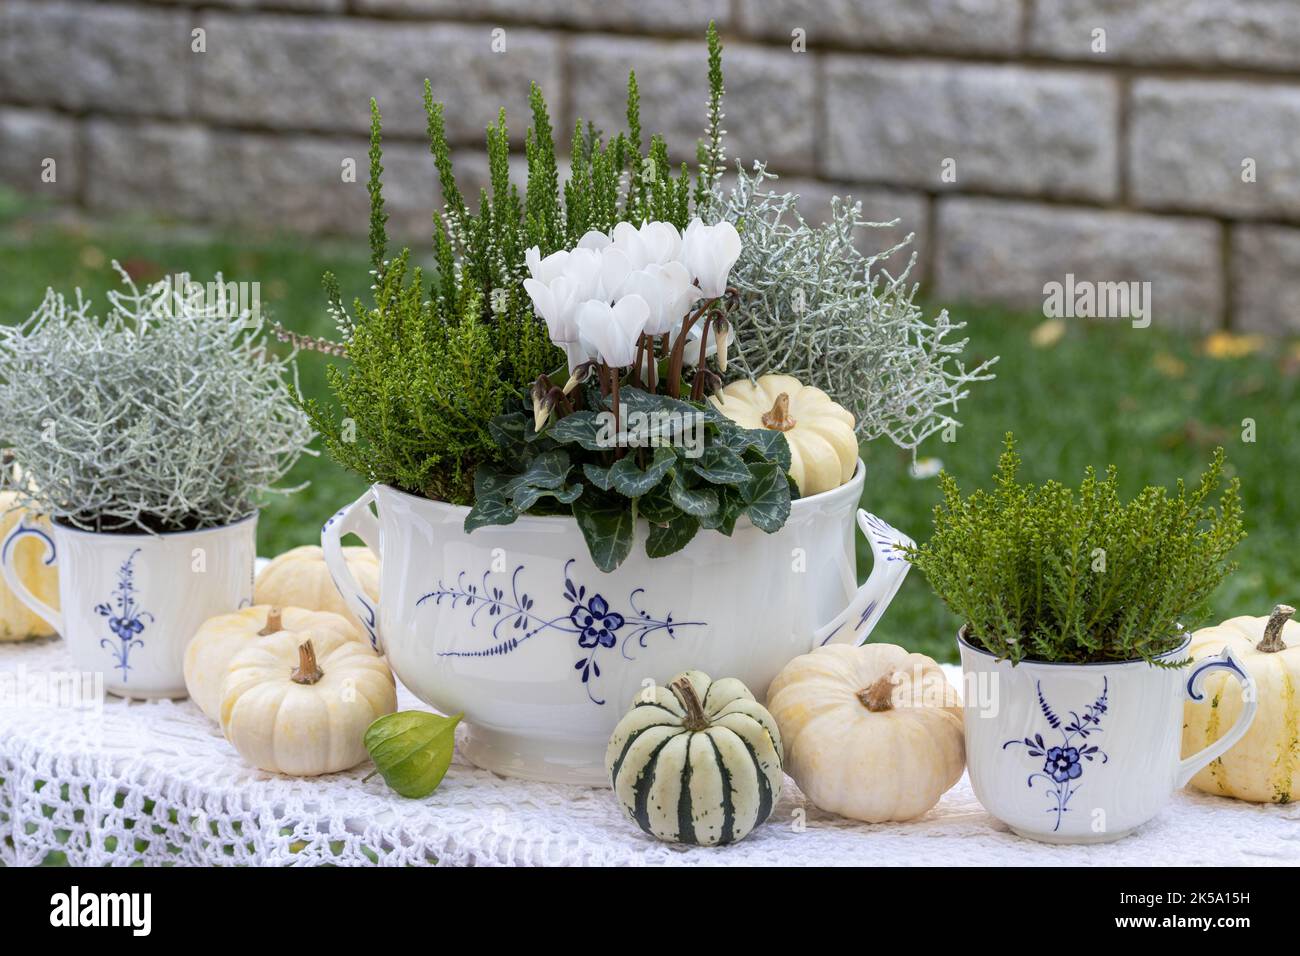 arrangement d'automne oral avec cyclamen blanc, plante de fil barbelé, arbuste veronica, bruyère et citrouilles blanches Banque D'Images